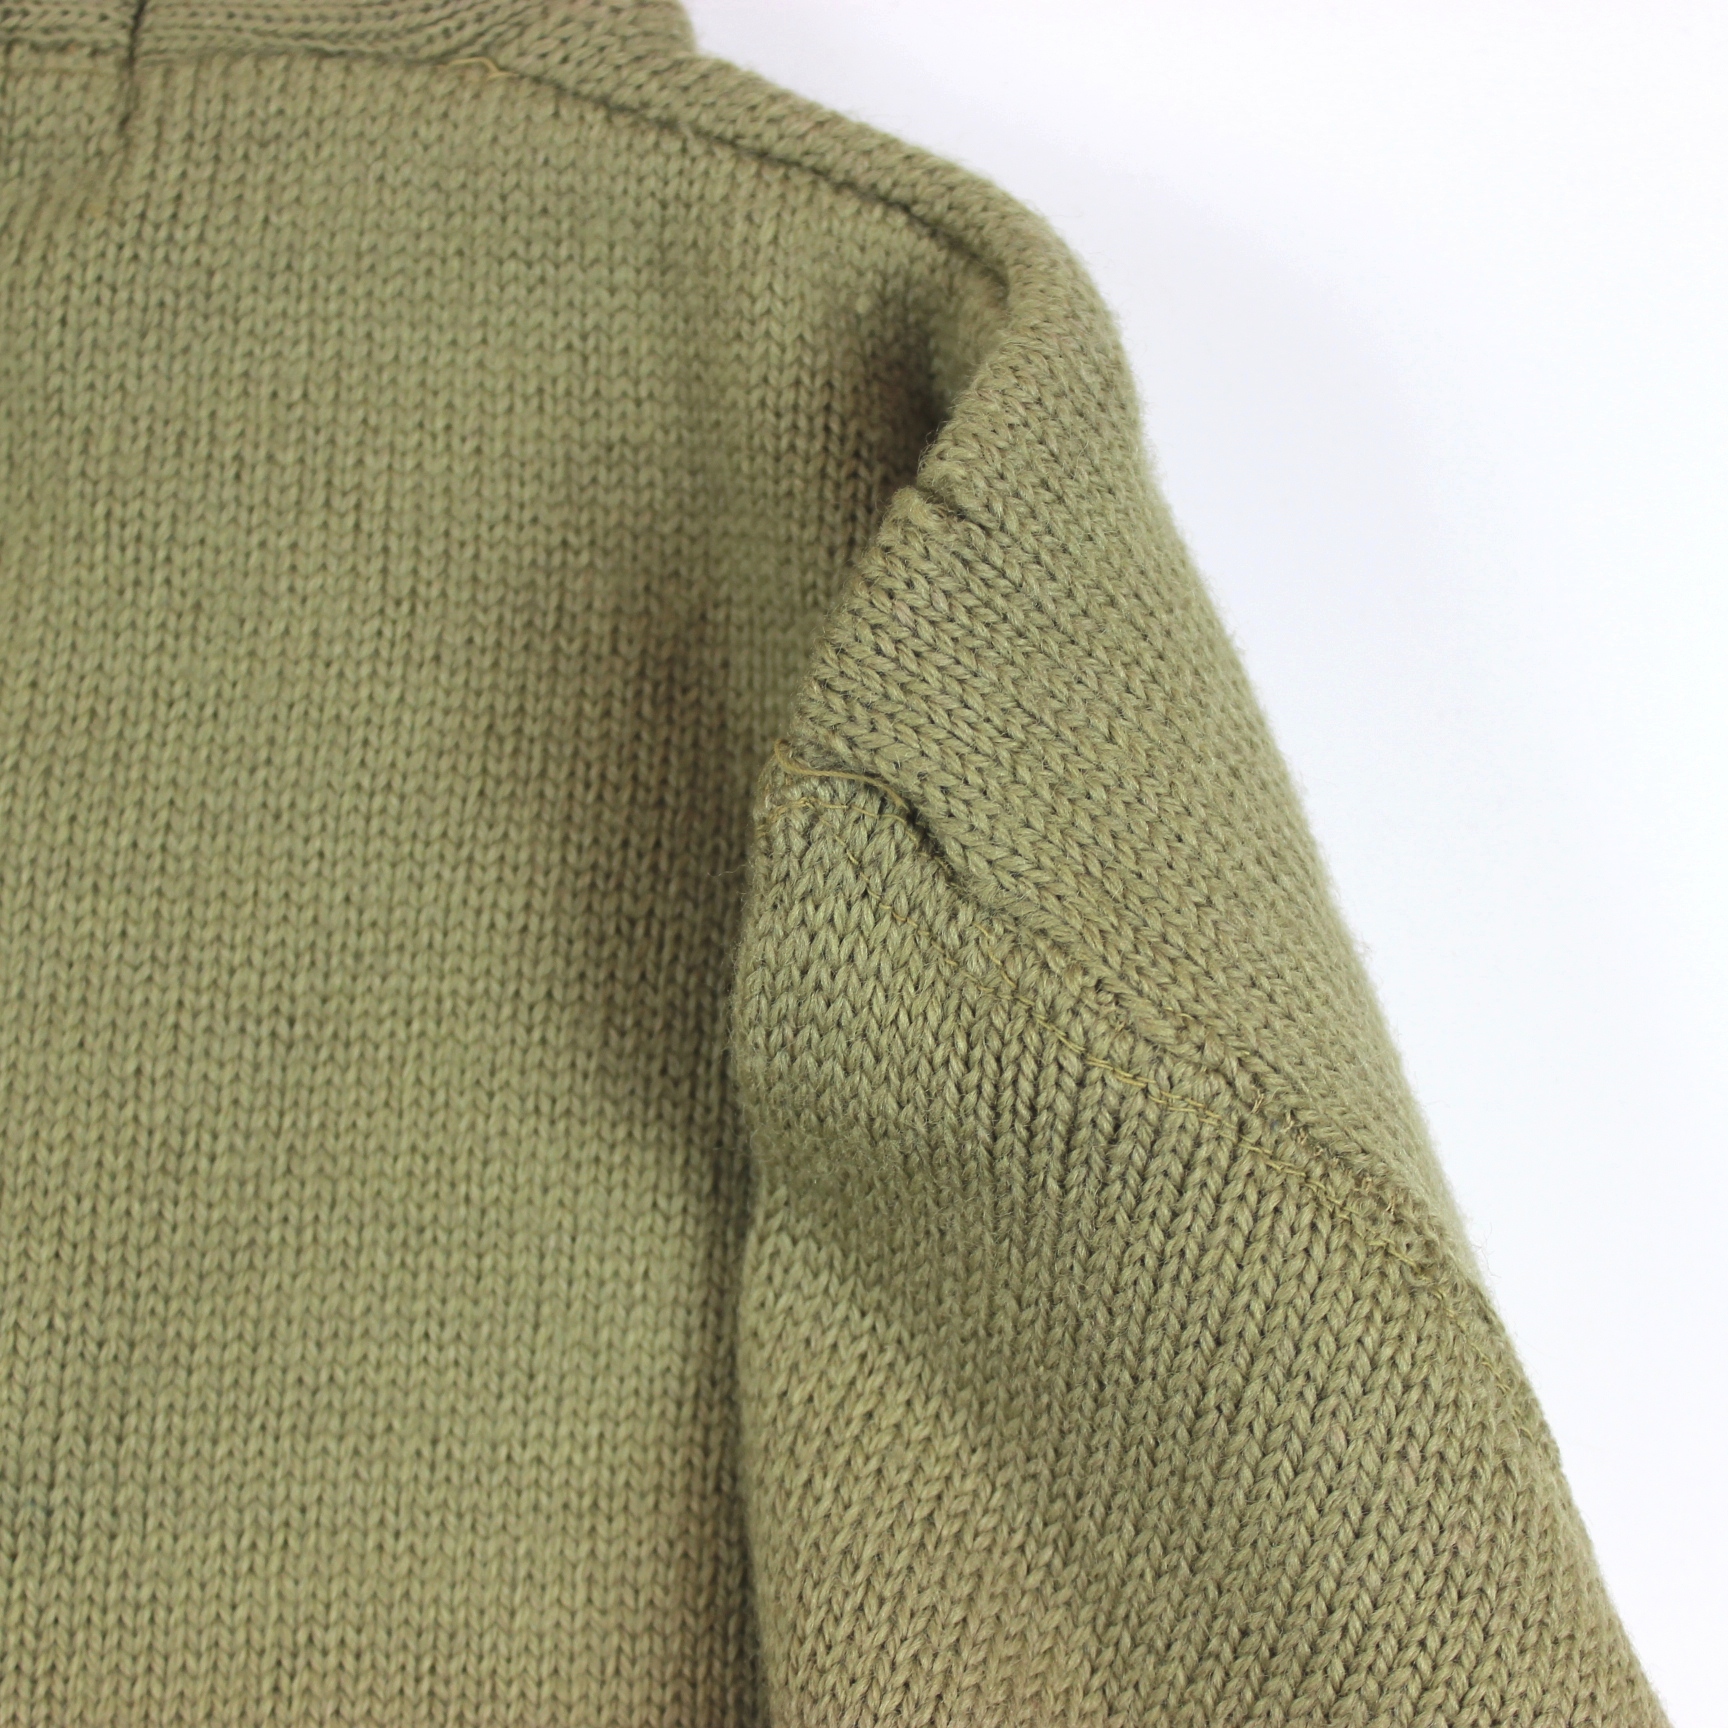 USAAF V Neck mechanics wool sweater type A1 - Aussie made